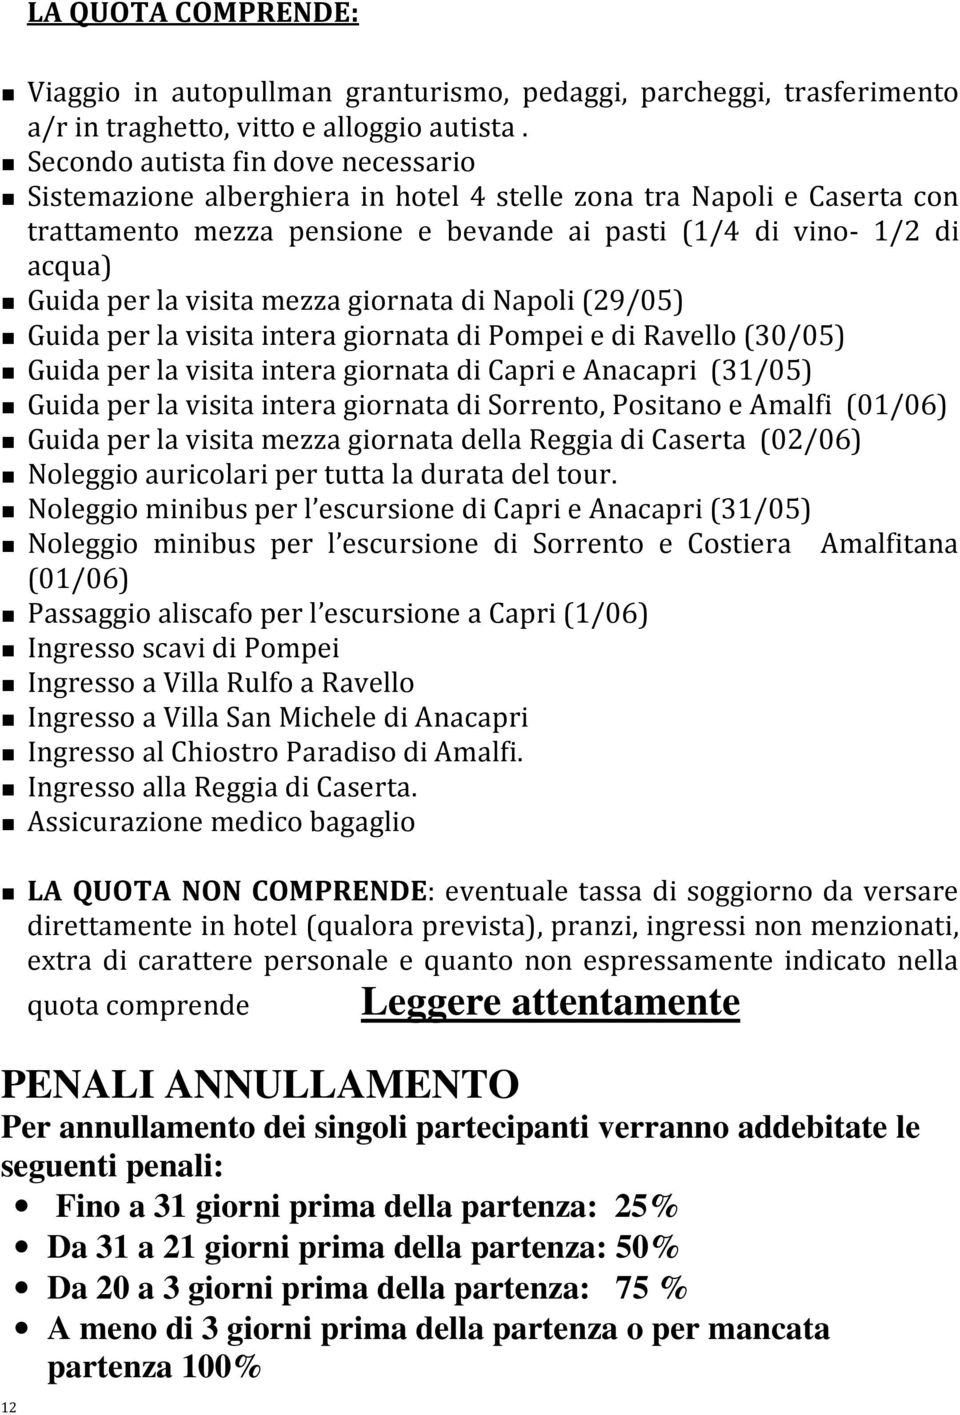 visita mezza giornata di Napoli (29/05) Guida per la visita intera giornata di Pompei e di Ravello (30/05) Guida per la visita intera giornata di Capri e Anacapri (31/05) Guida per la visita intera